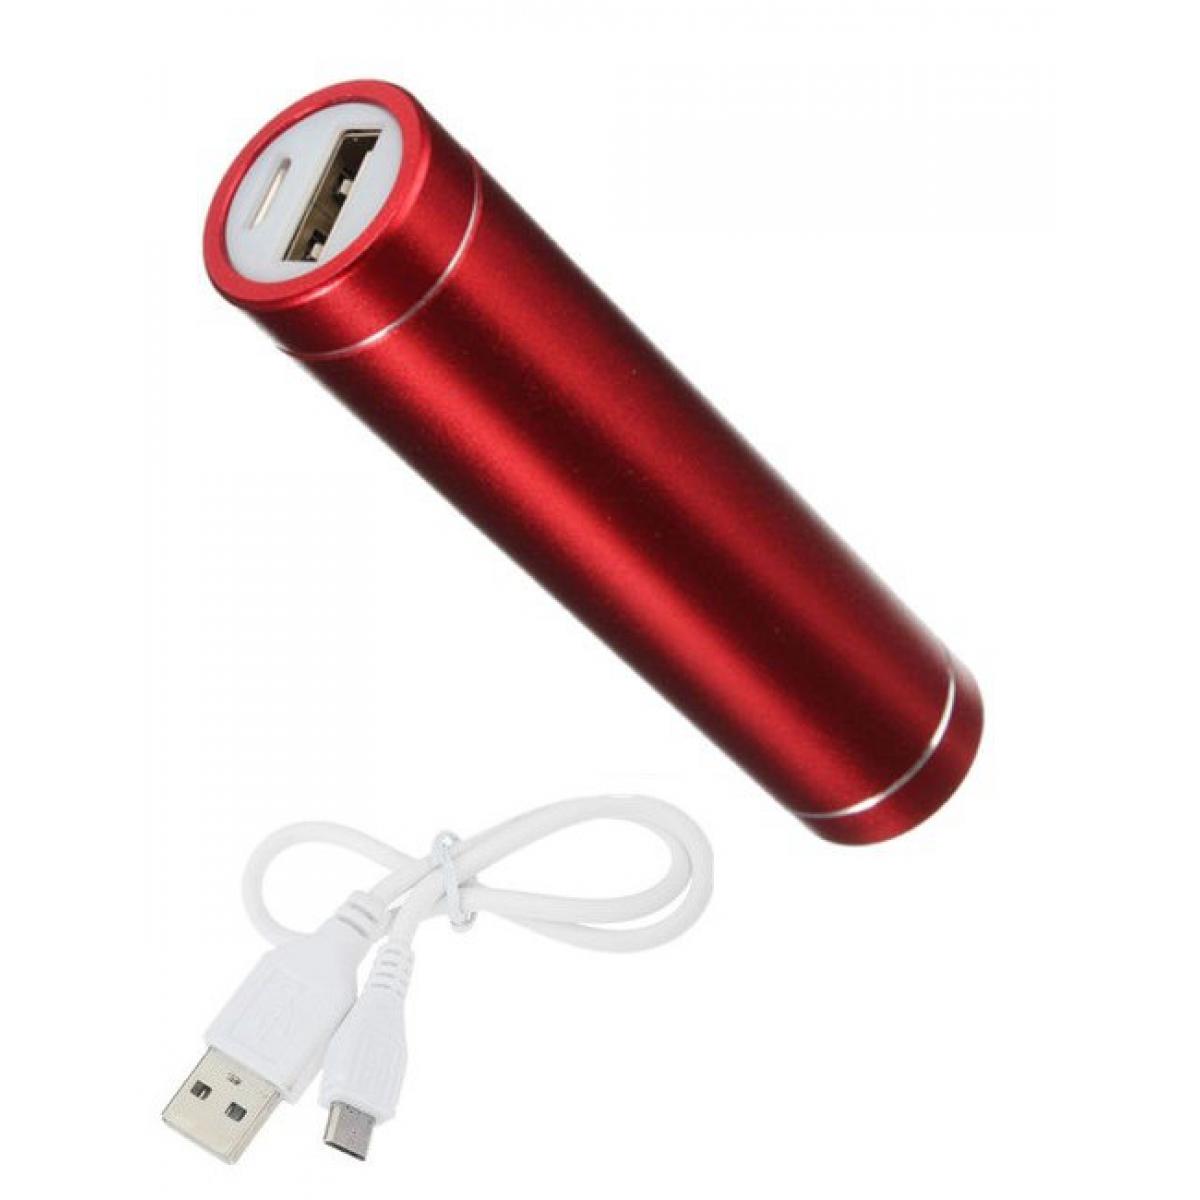 Shot - Batterie Chargeur Externe pour HUAWEI P40 Power Bank 2600mAh avec Cable USB/Mirco USB Secours Telephone (ROUGE) - Chargeur secteur téléphone